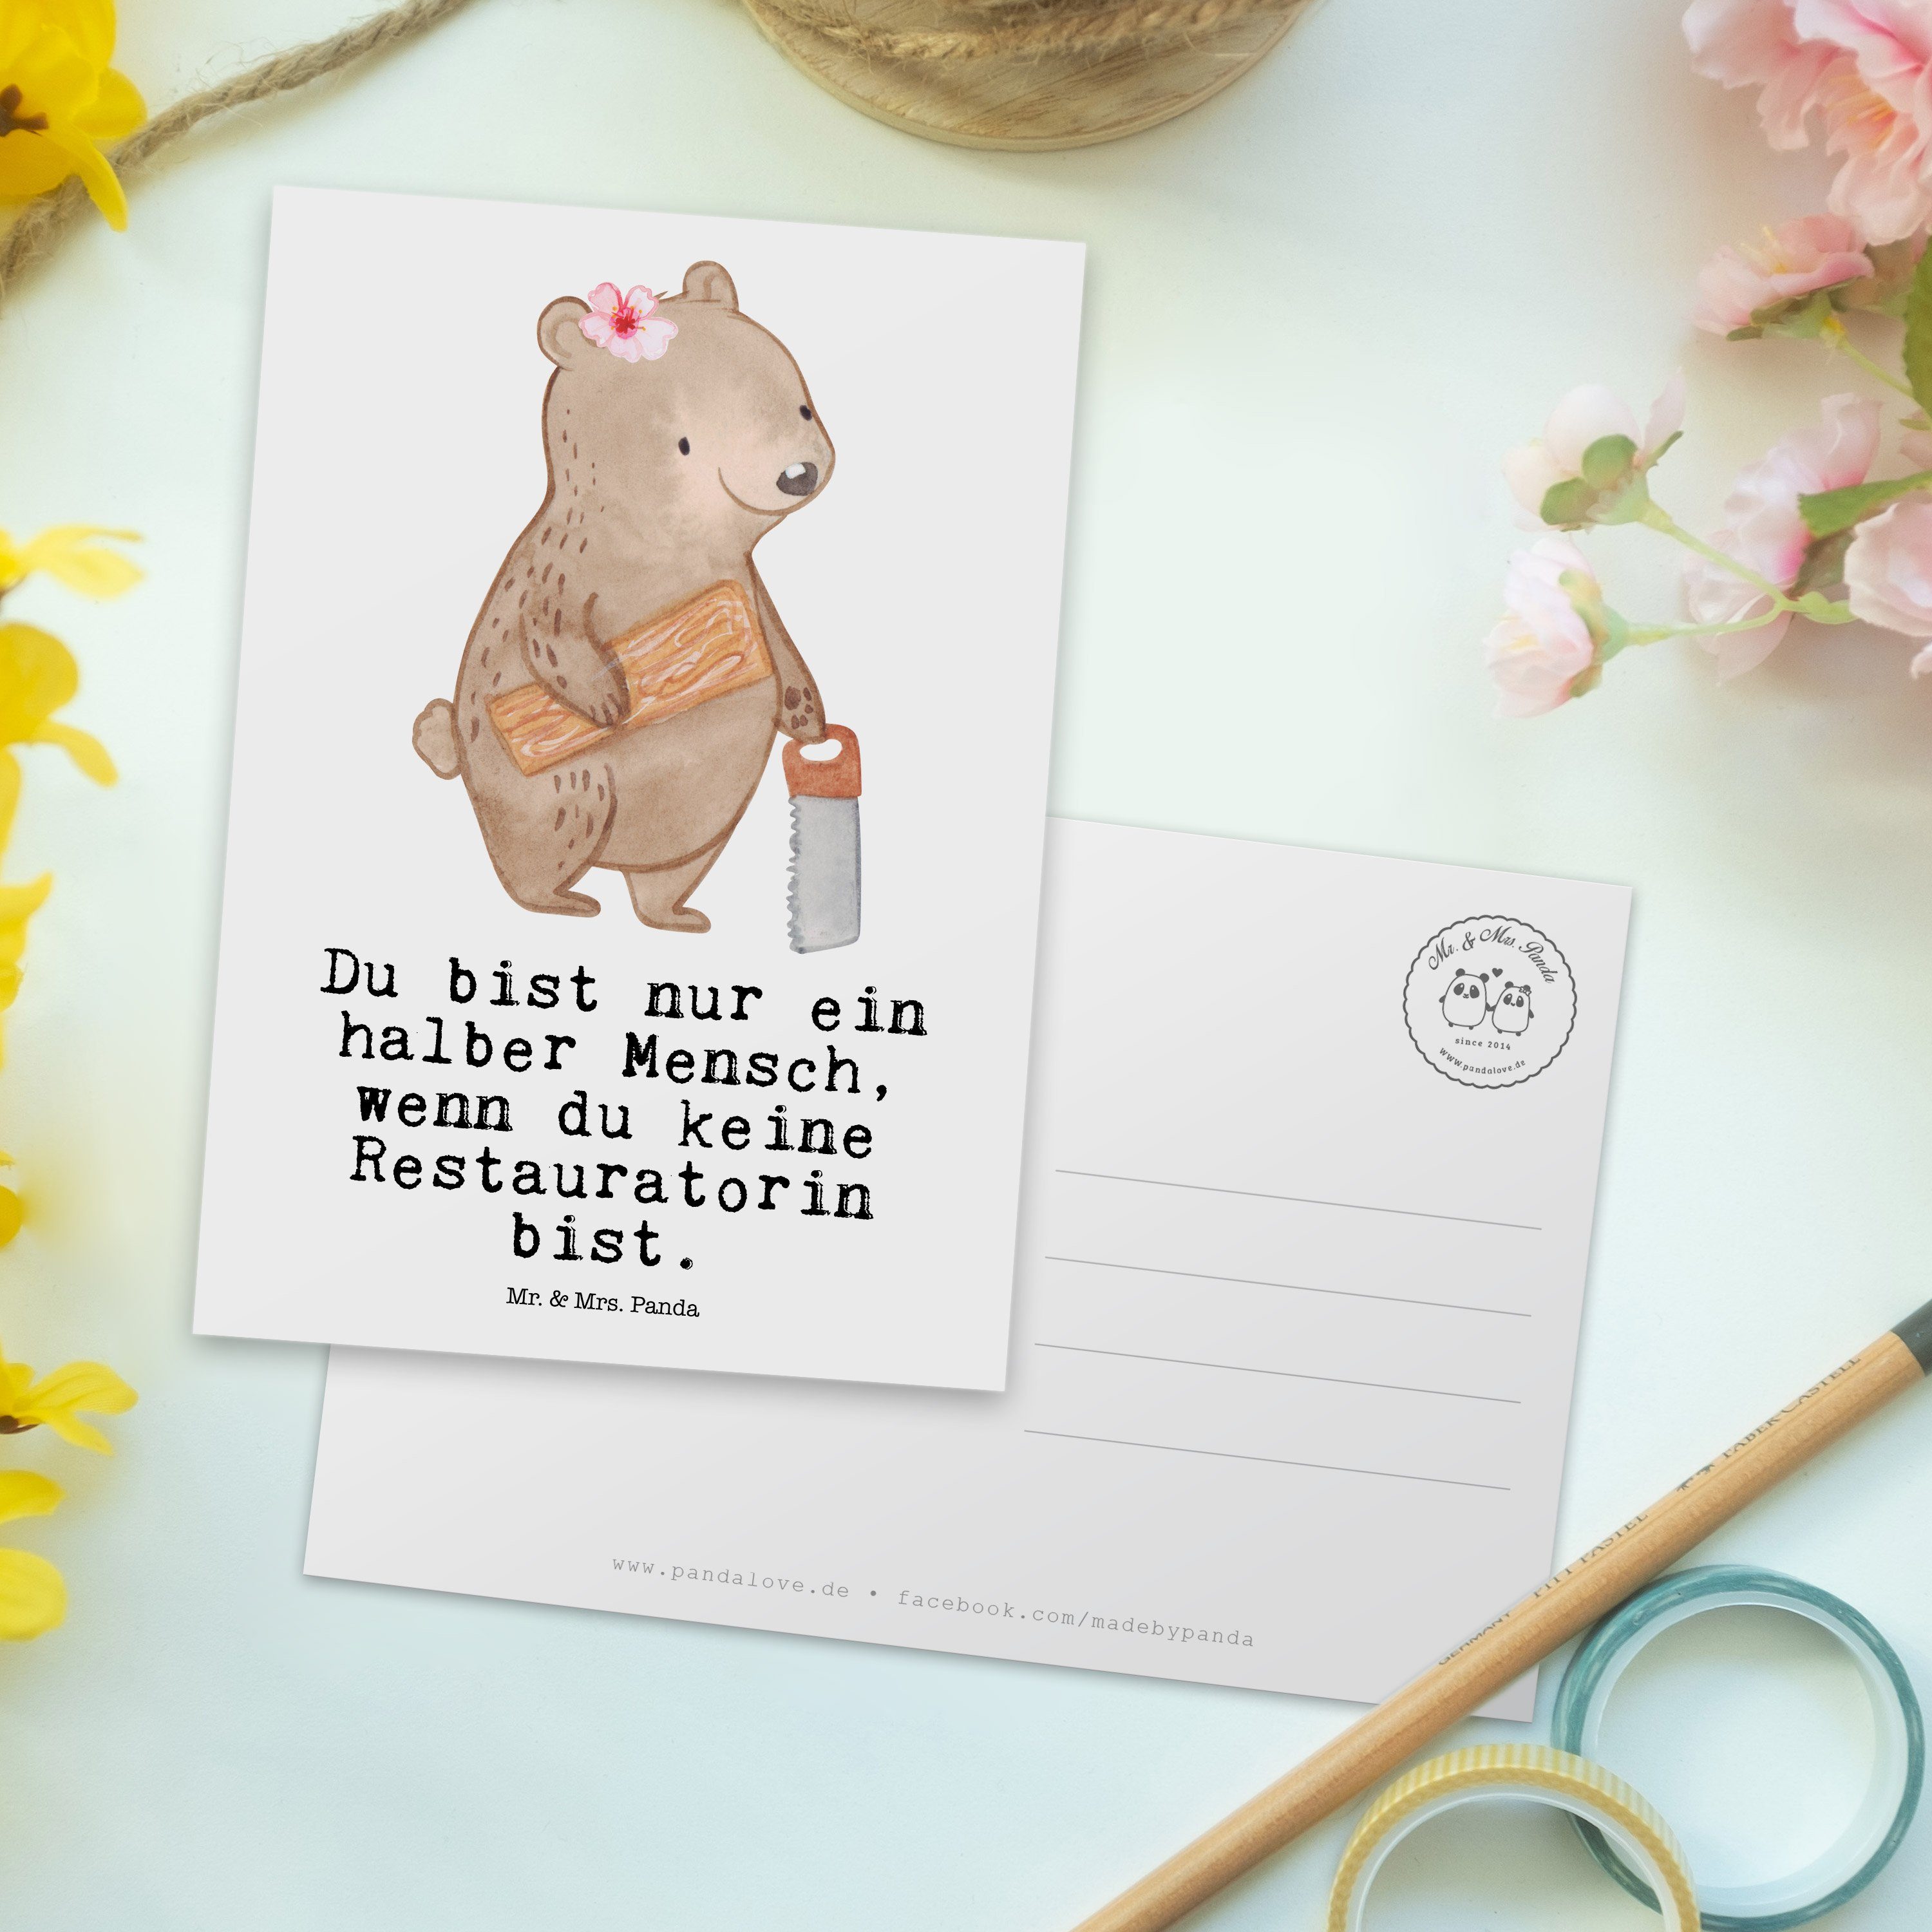 Mr. & Geburts Herz Mitarbeiter, Firma, - mit Postkarte Weiß - Restauratorin Mrs. Geschenk, Panda